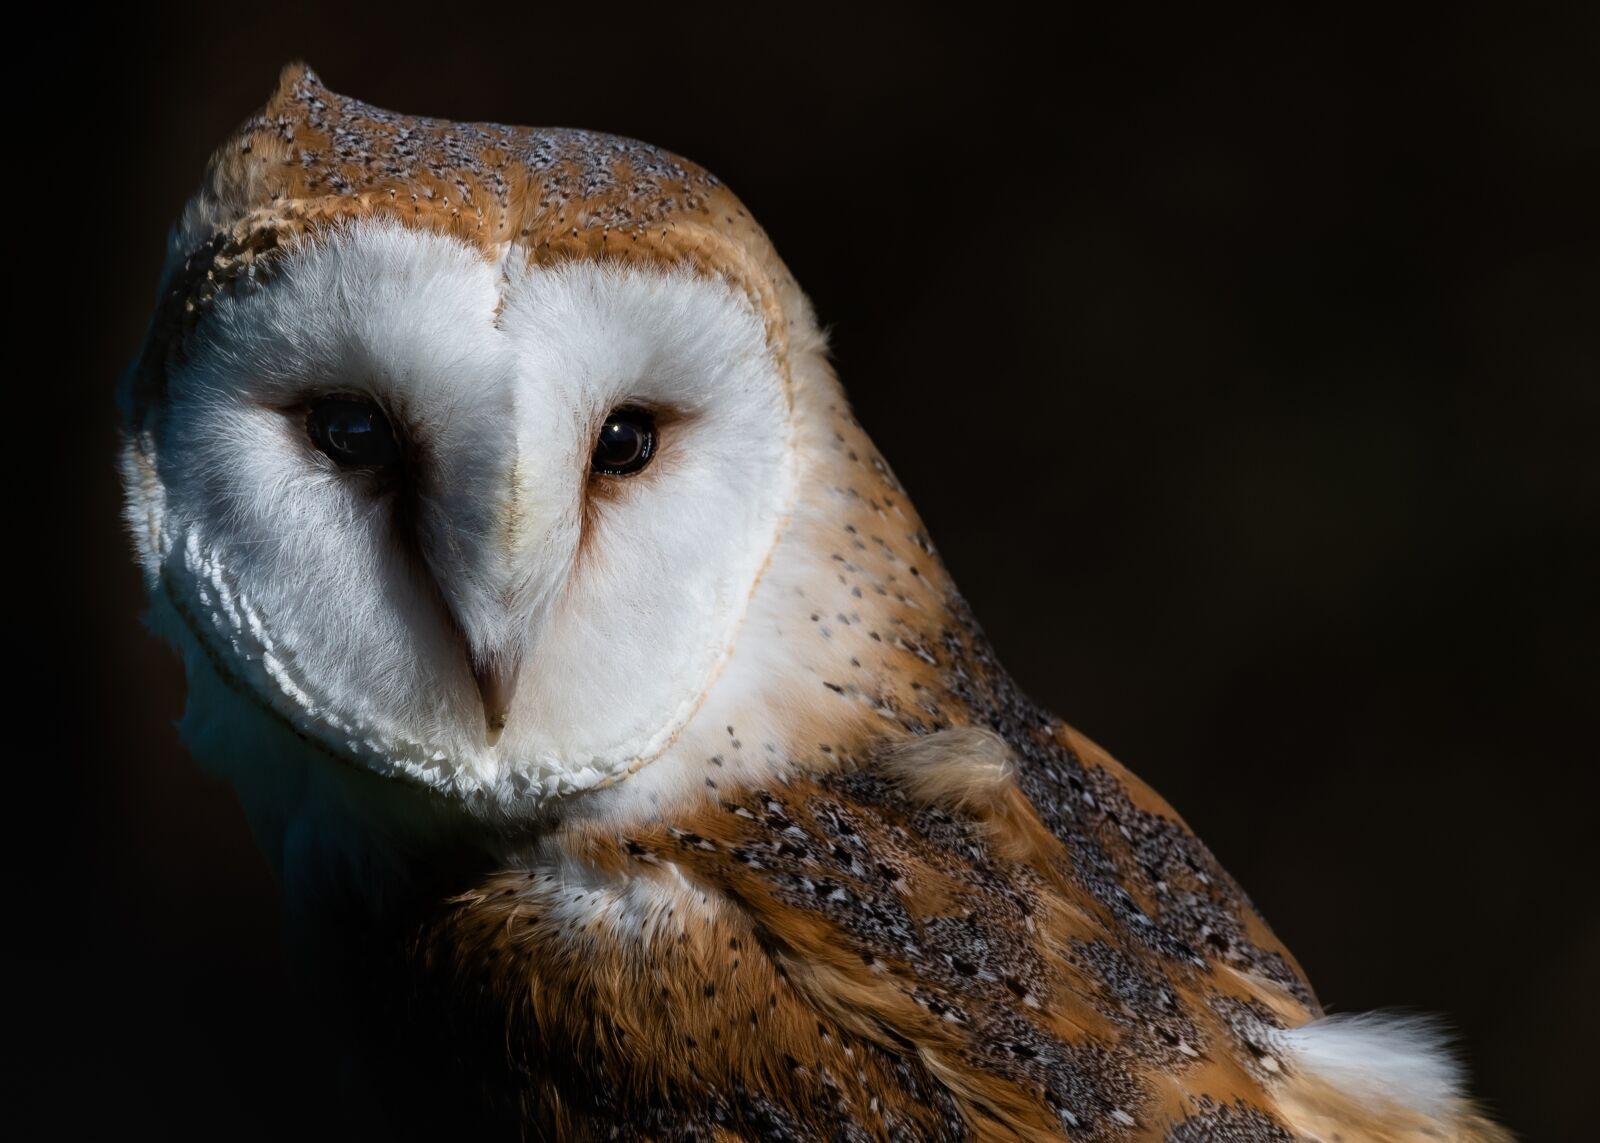 Nikon D810 sample photo. Owl, barn owl, portrait photography